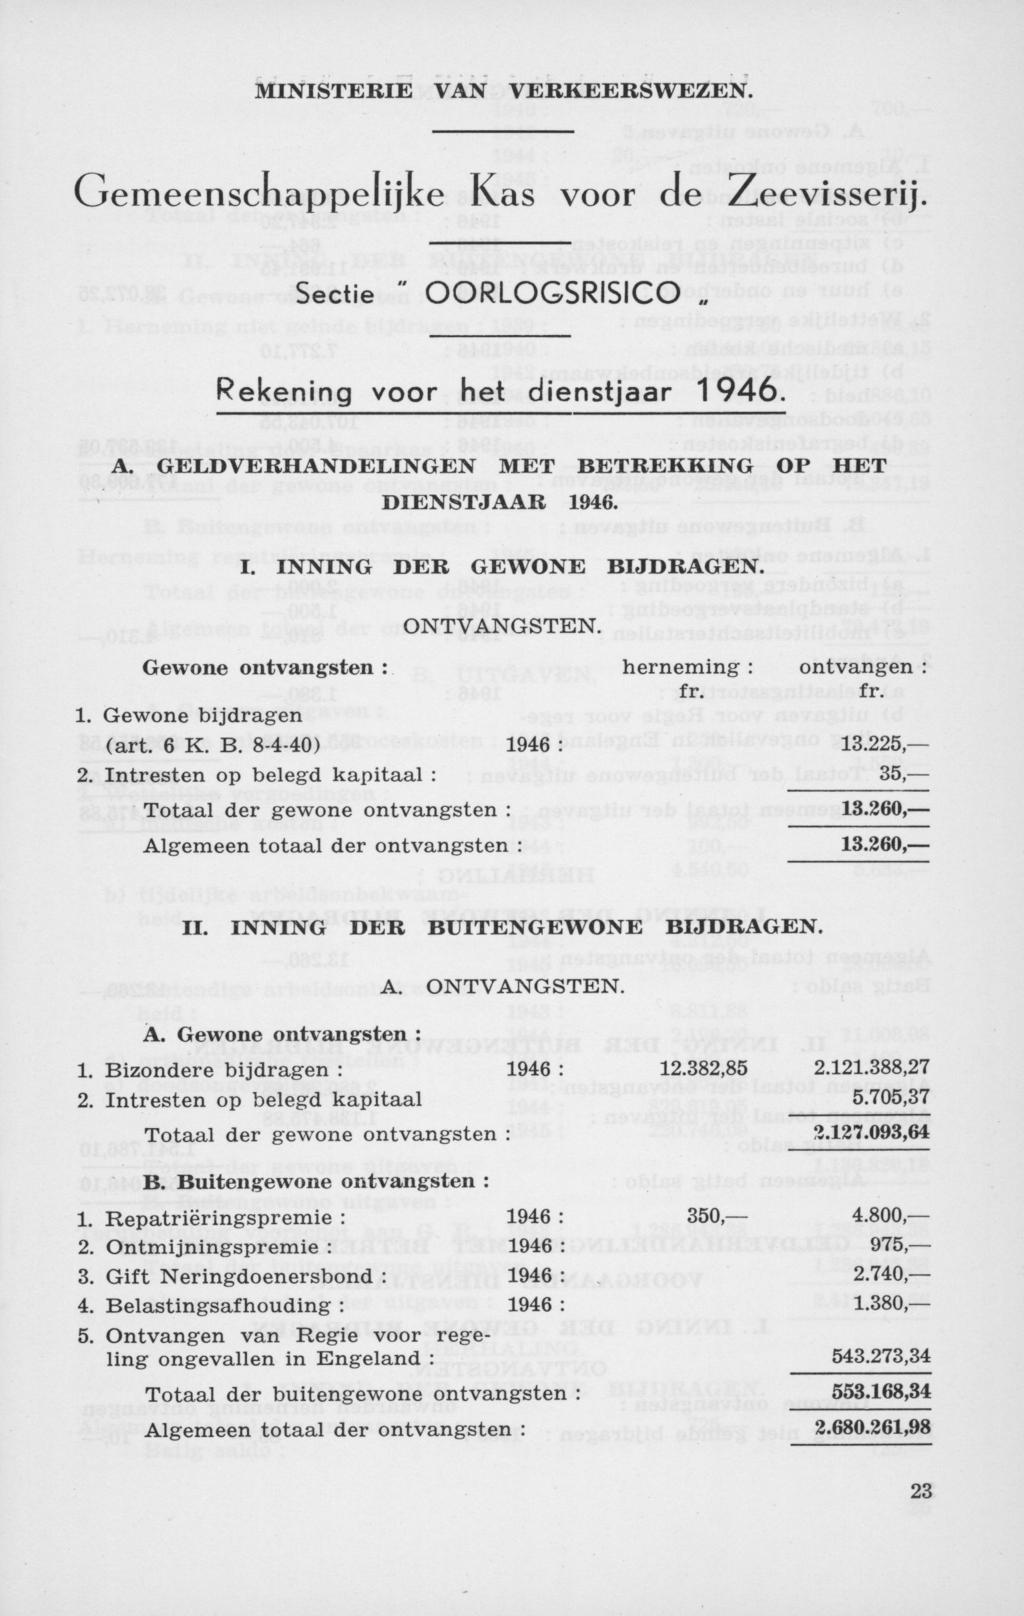 Gemeenschappelijke Kas voor de Zeevisserij. Sectie " OORLOGSRISICO Rekening voor het dienstjaar 1946. A. GELD VERHANDELINGEN MET BETREKKING OP HET DIENSTJAAR 1946. I. INNING DER GEWONE BIJDRAGEN.